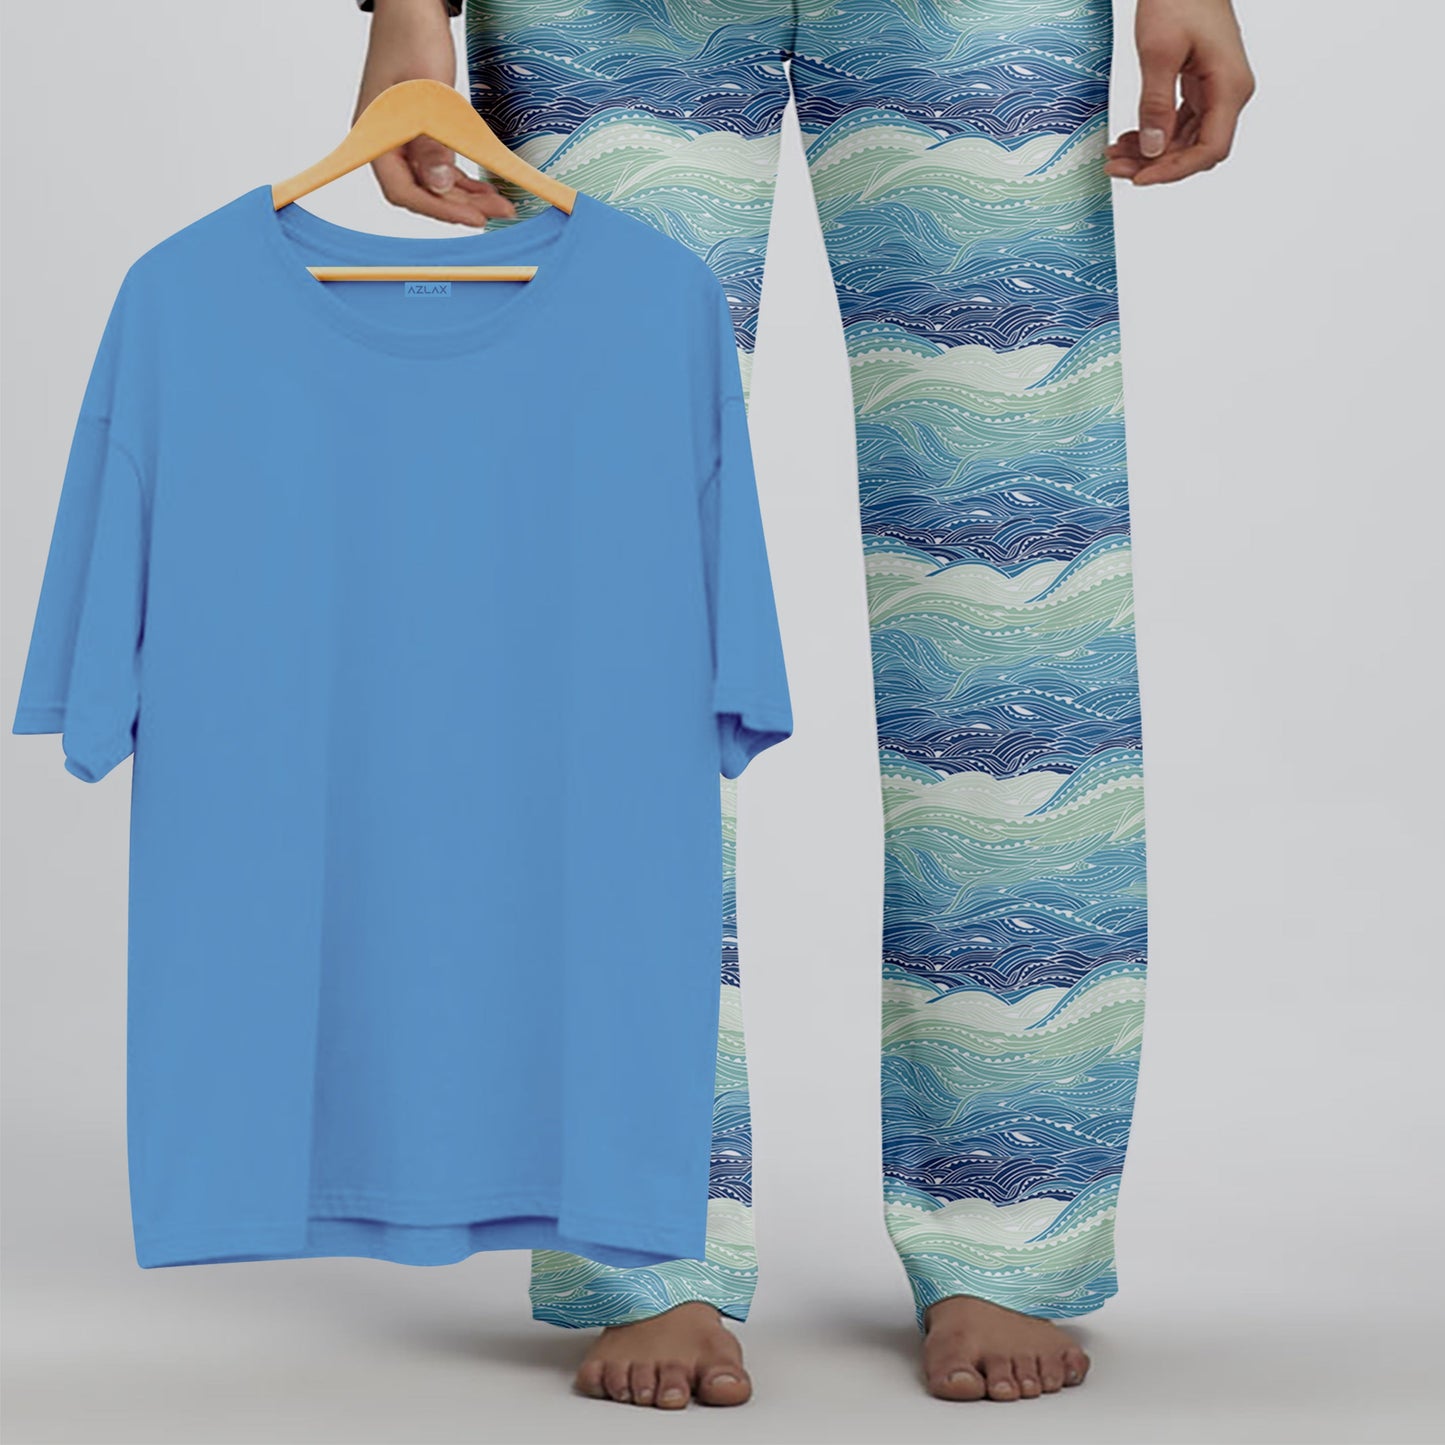 Azlax Royal Blue Waves 100% Cotton Pajama Sets - Tshirt + Pajamas